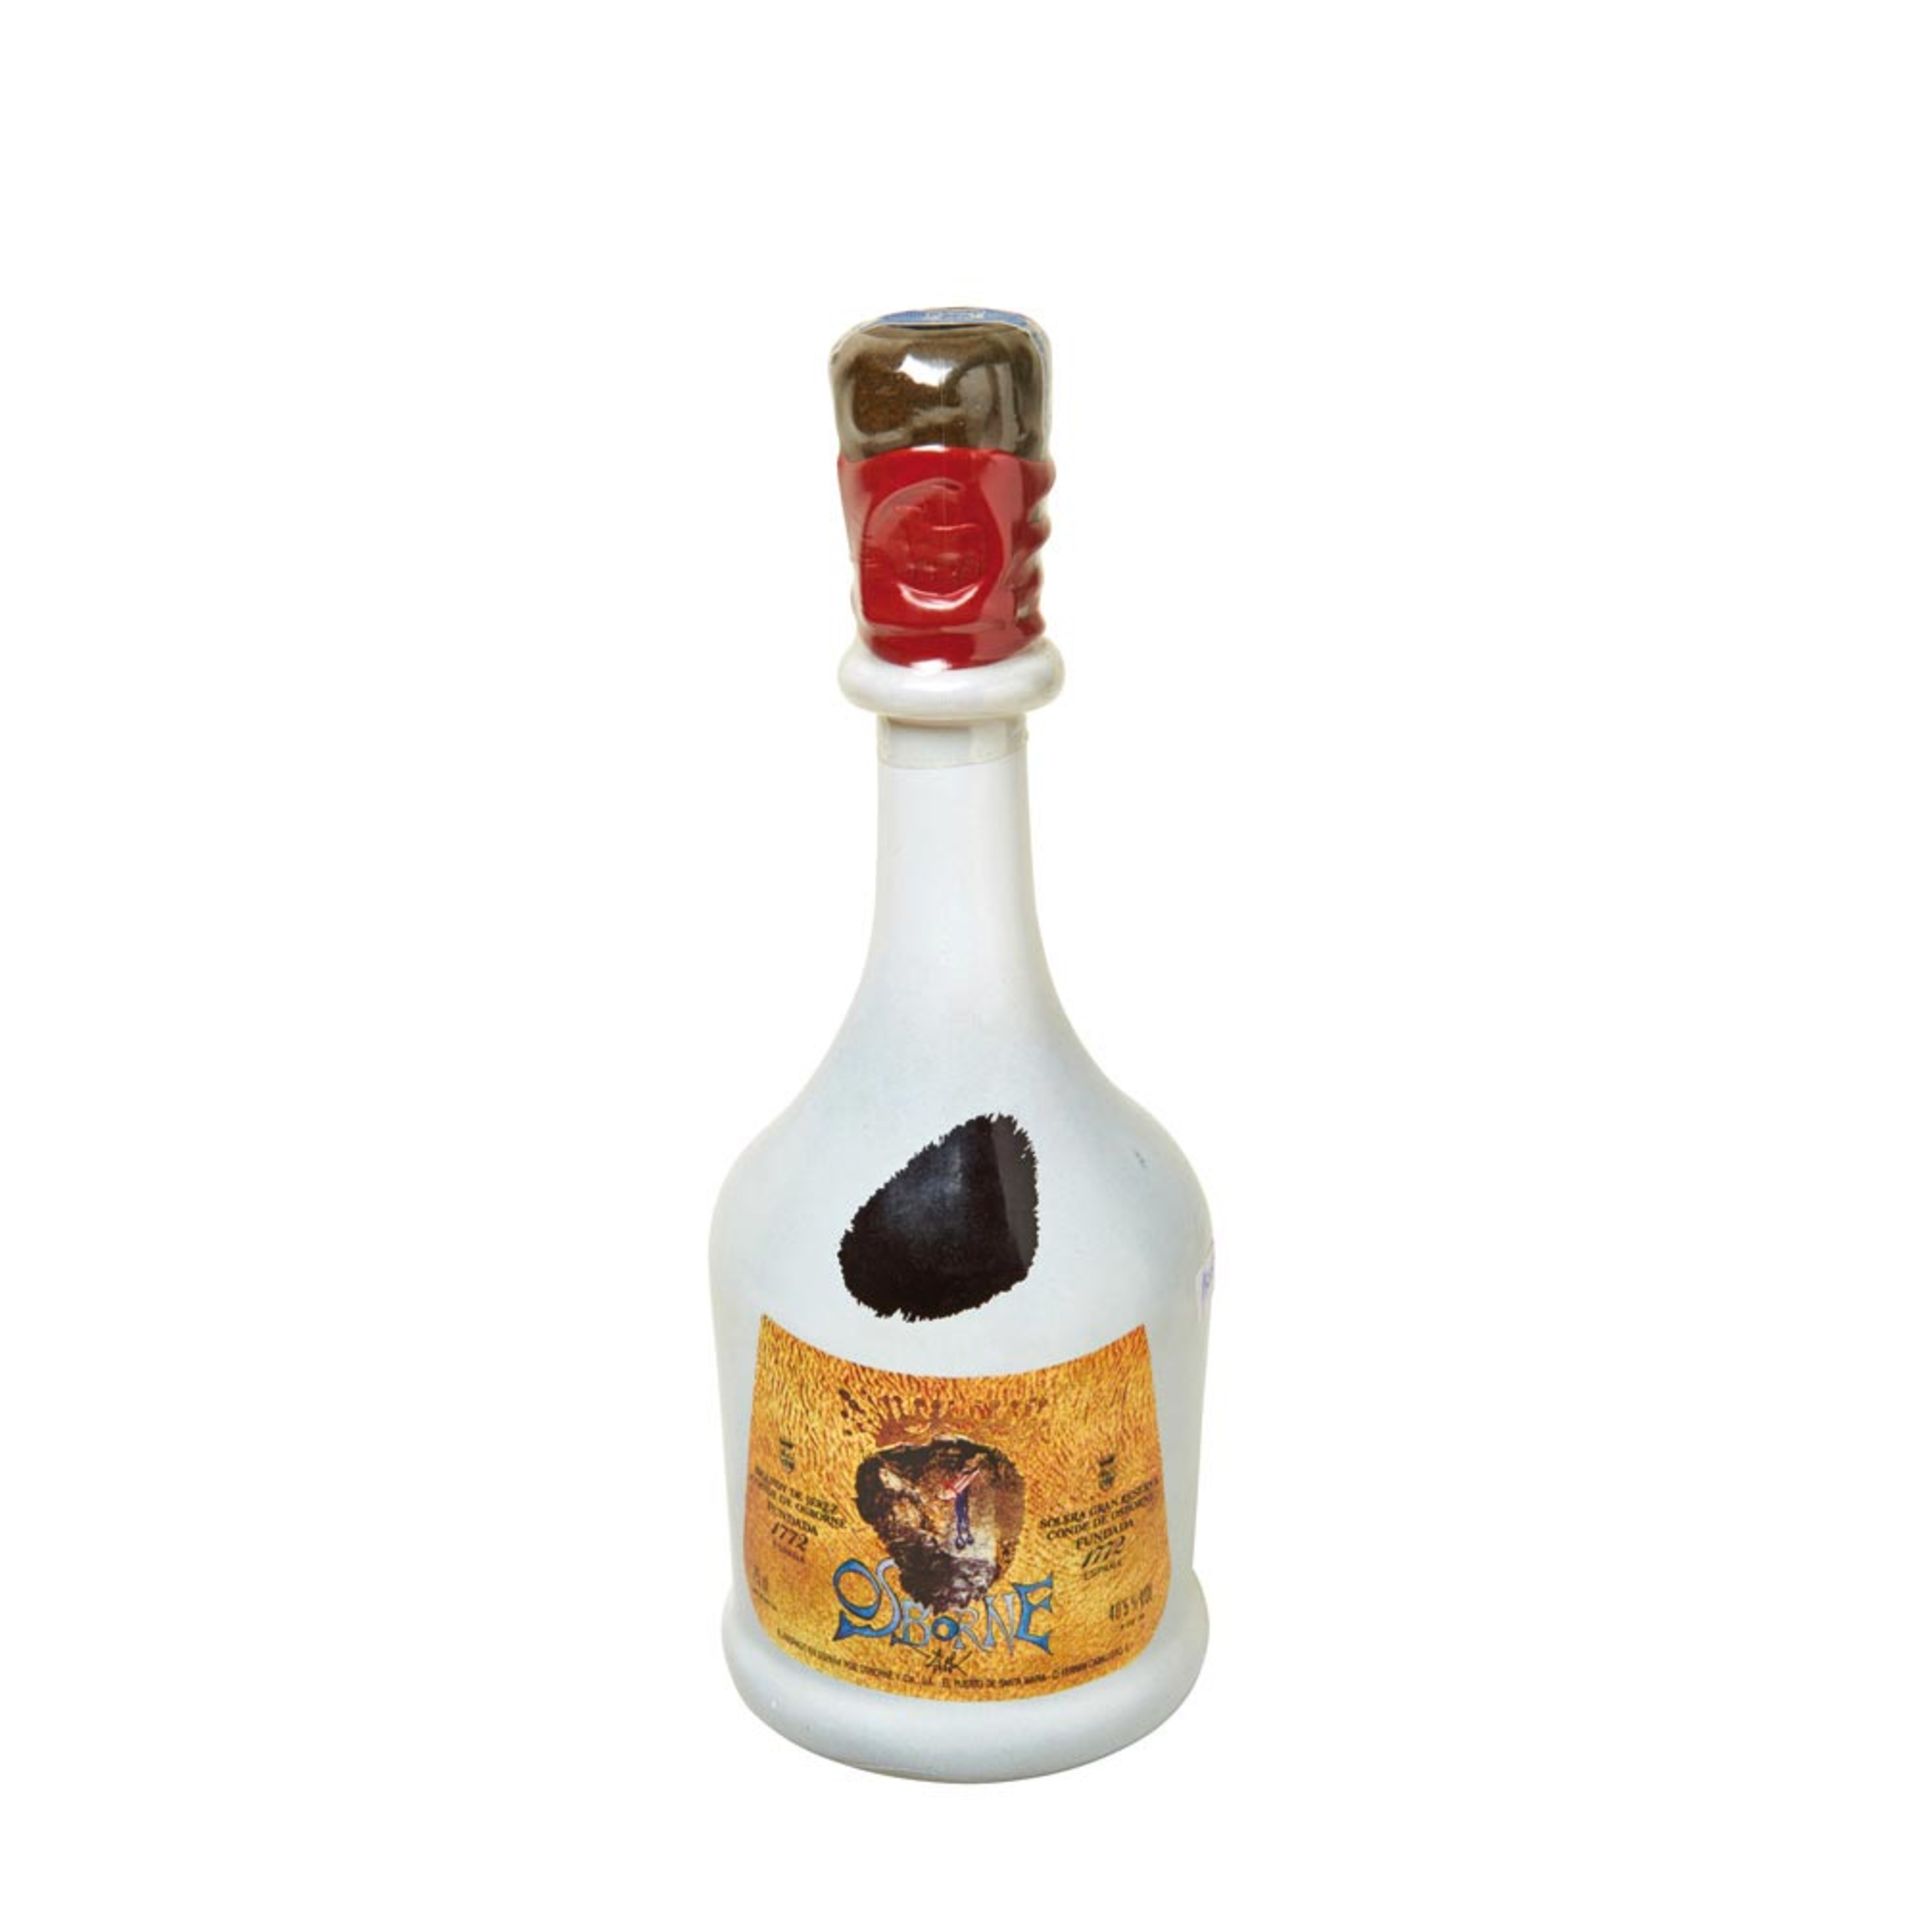 Spanish brandy bottle signed by Salvador Dalí